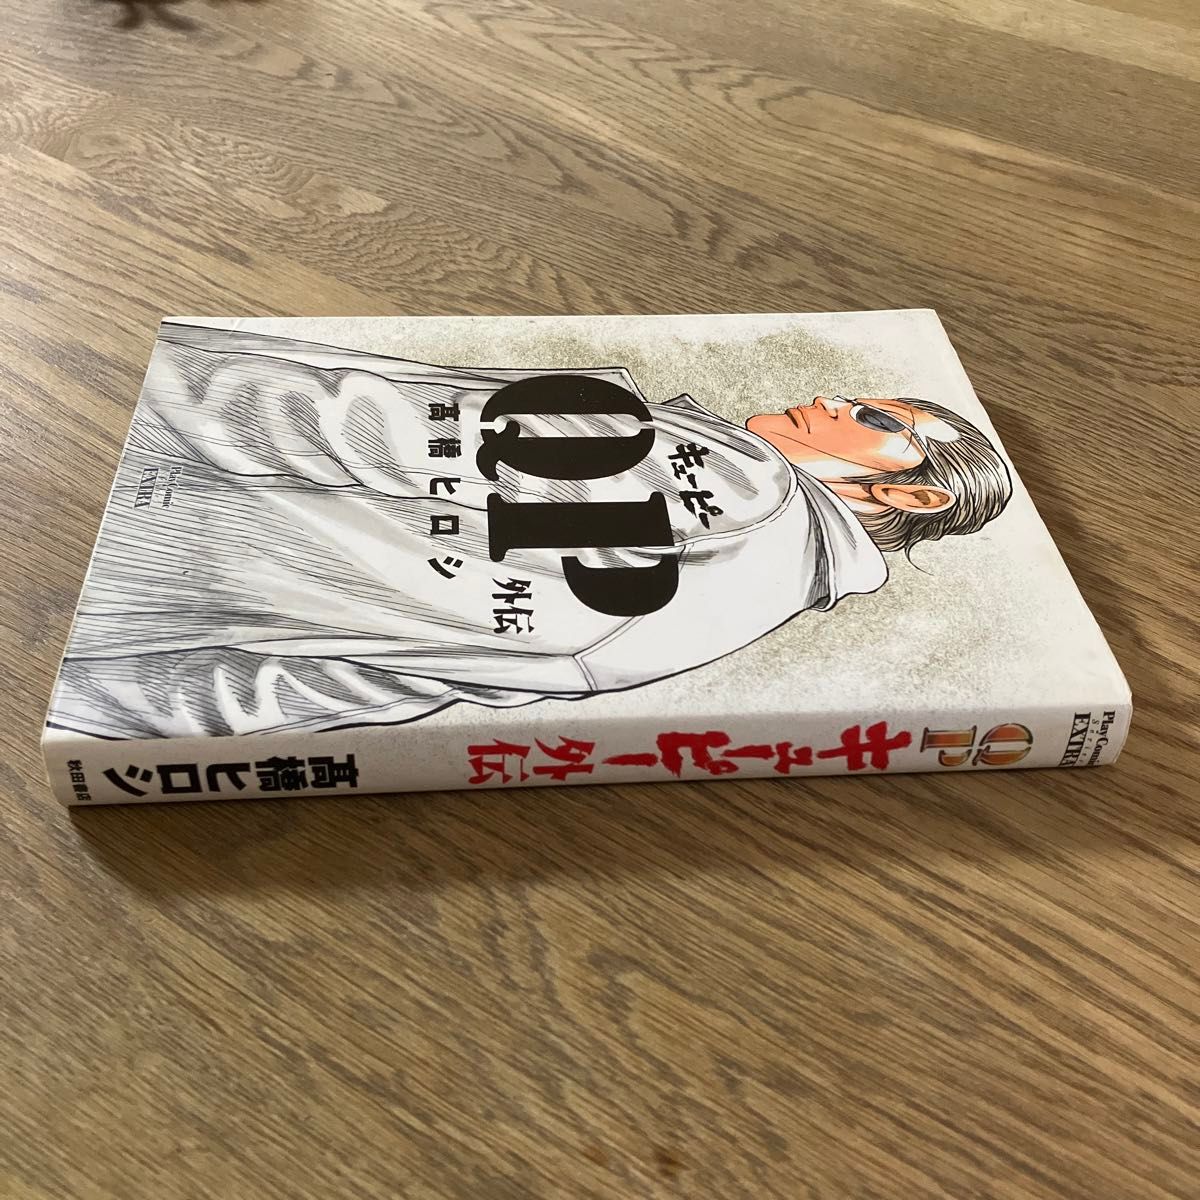 秋田書店 プレイコミックシリーズエクストラ 高橋ヒロシ QP外伝 完全版 初版